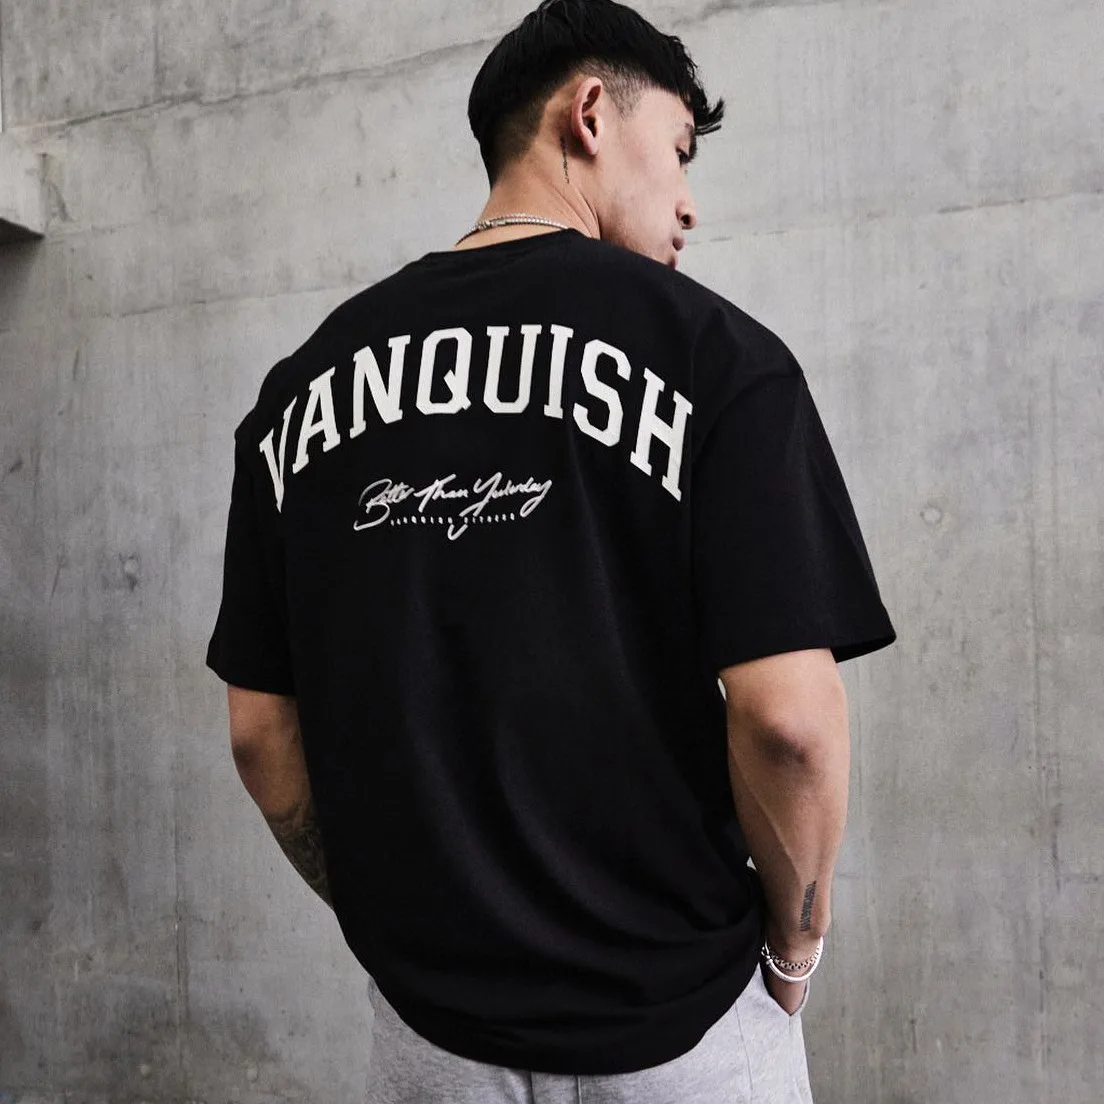 

Camiseta deportiva de algodón para hombre, camisa de manga corta con cuello redondo, estilo hip hop, informal, para correr y fit